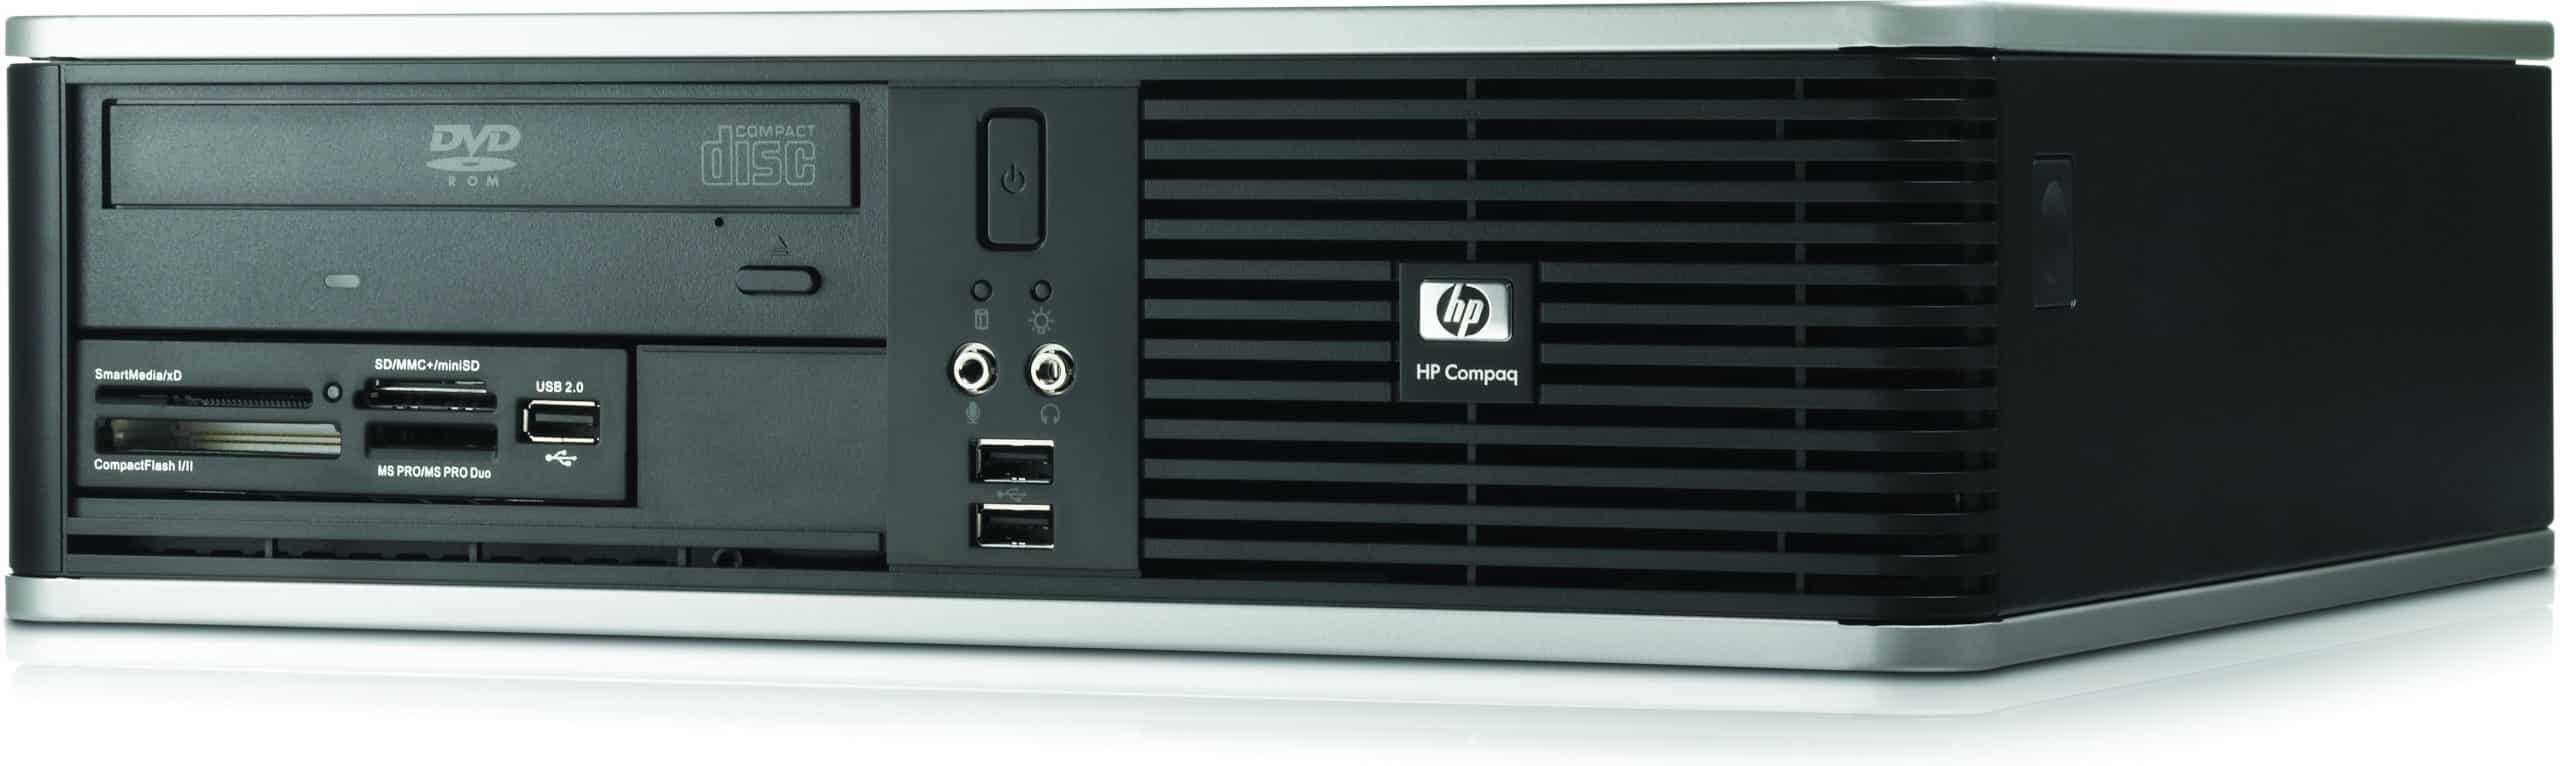 HP Compaq dc7900 SFF